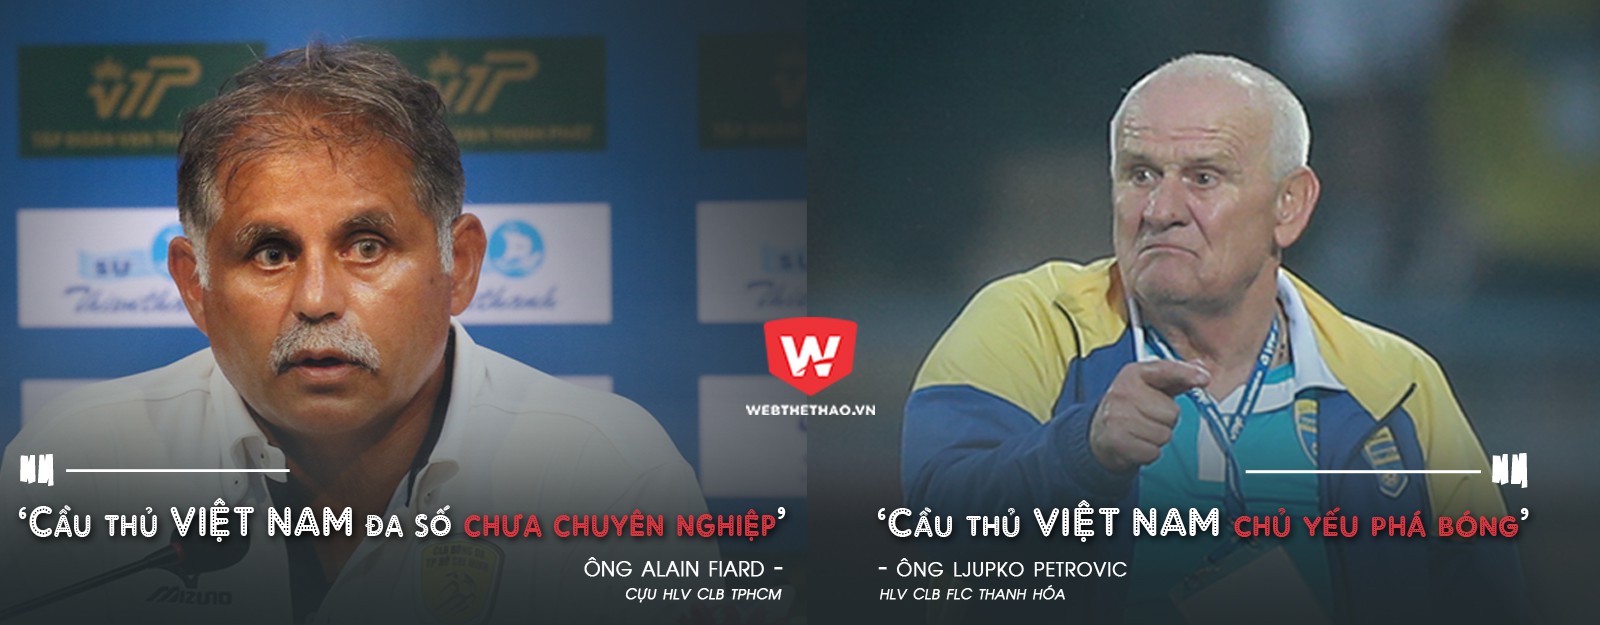 HLV Petrovic và HLV Alain Fiard là những HLV ngoại tiếp theo cảm nhận được những điểm chưa tốt của cầu thủ Việt Nam. Ảnh: Trung Thu.